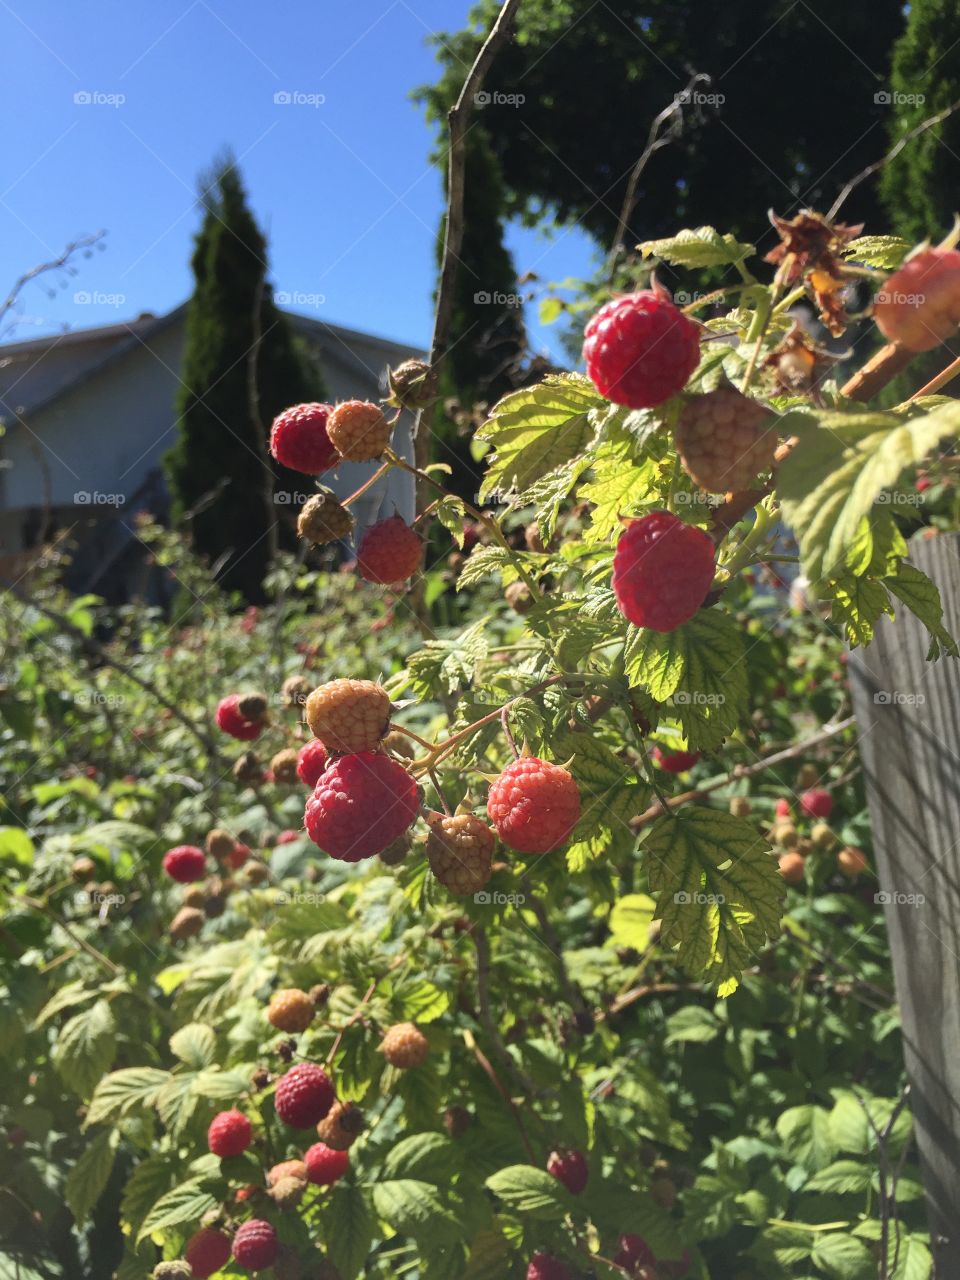 Raspberries in the garden 